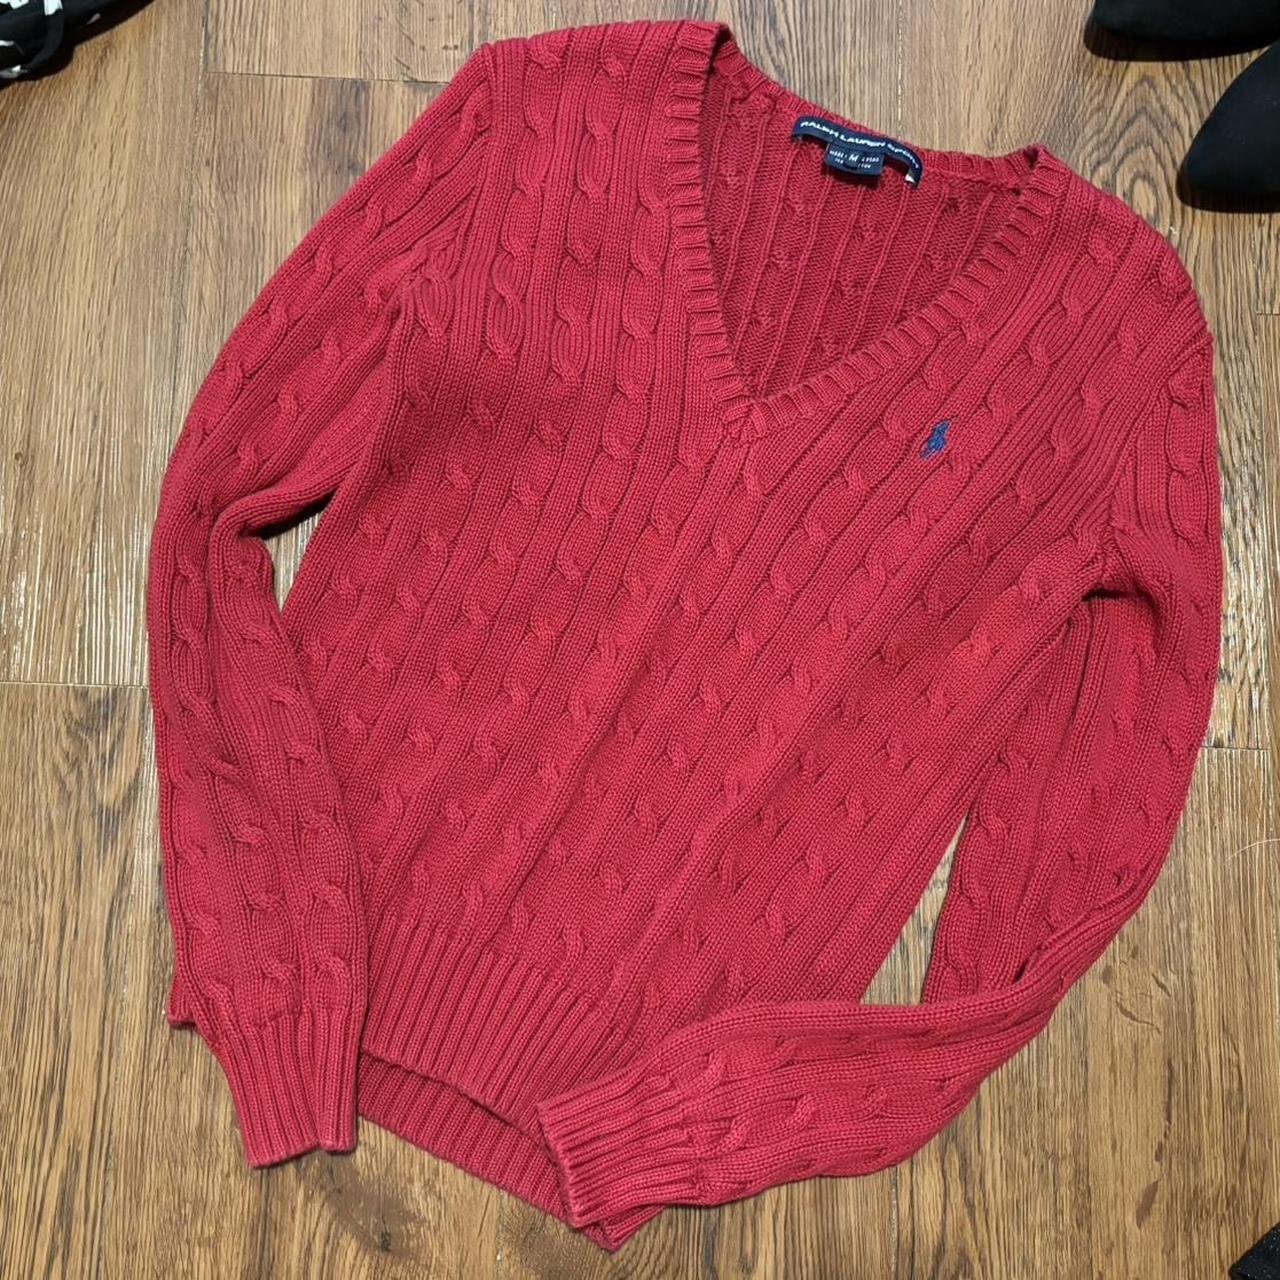 Ralph Lauren Sport Knitted sweater, red Medium... - Depop